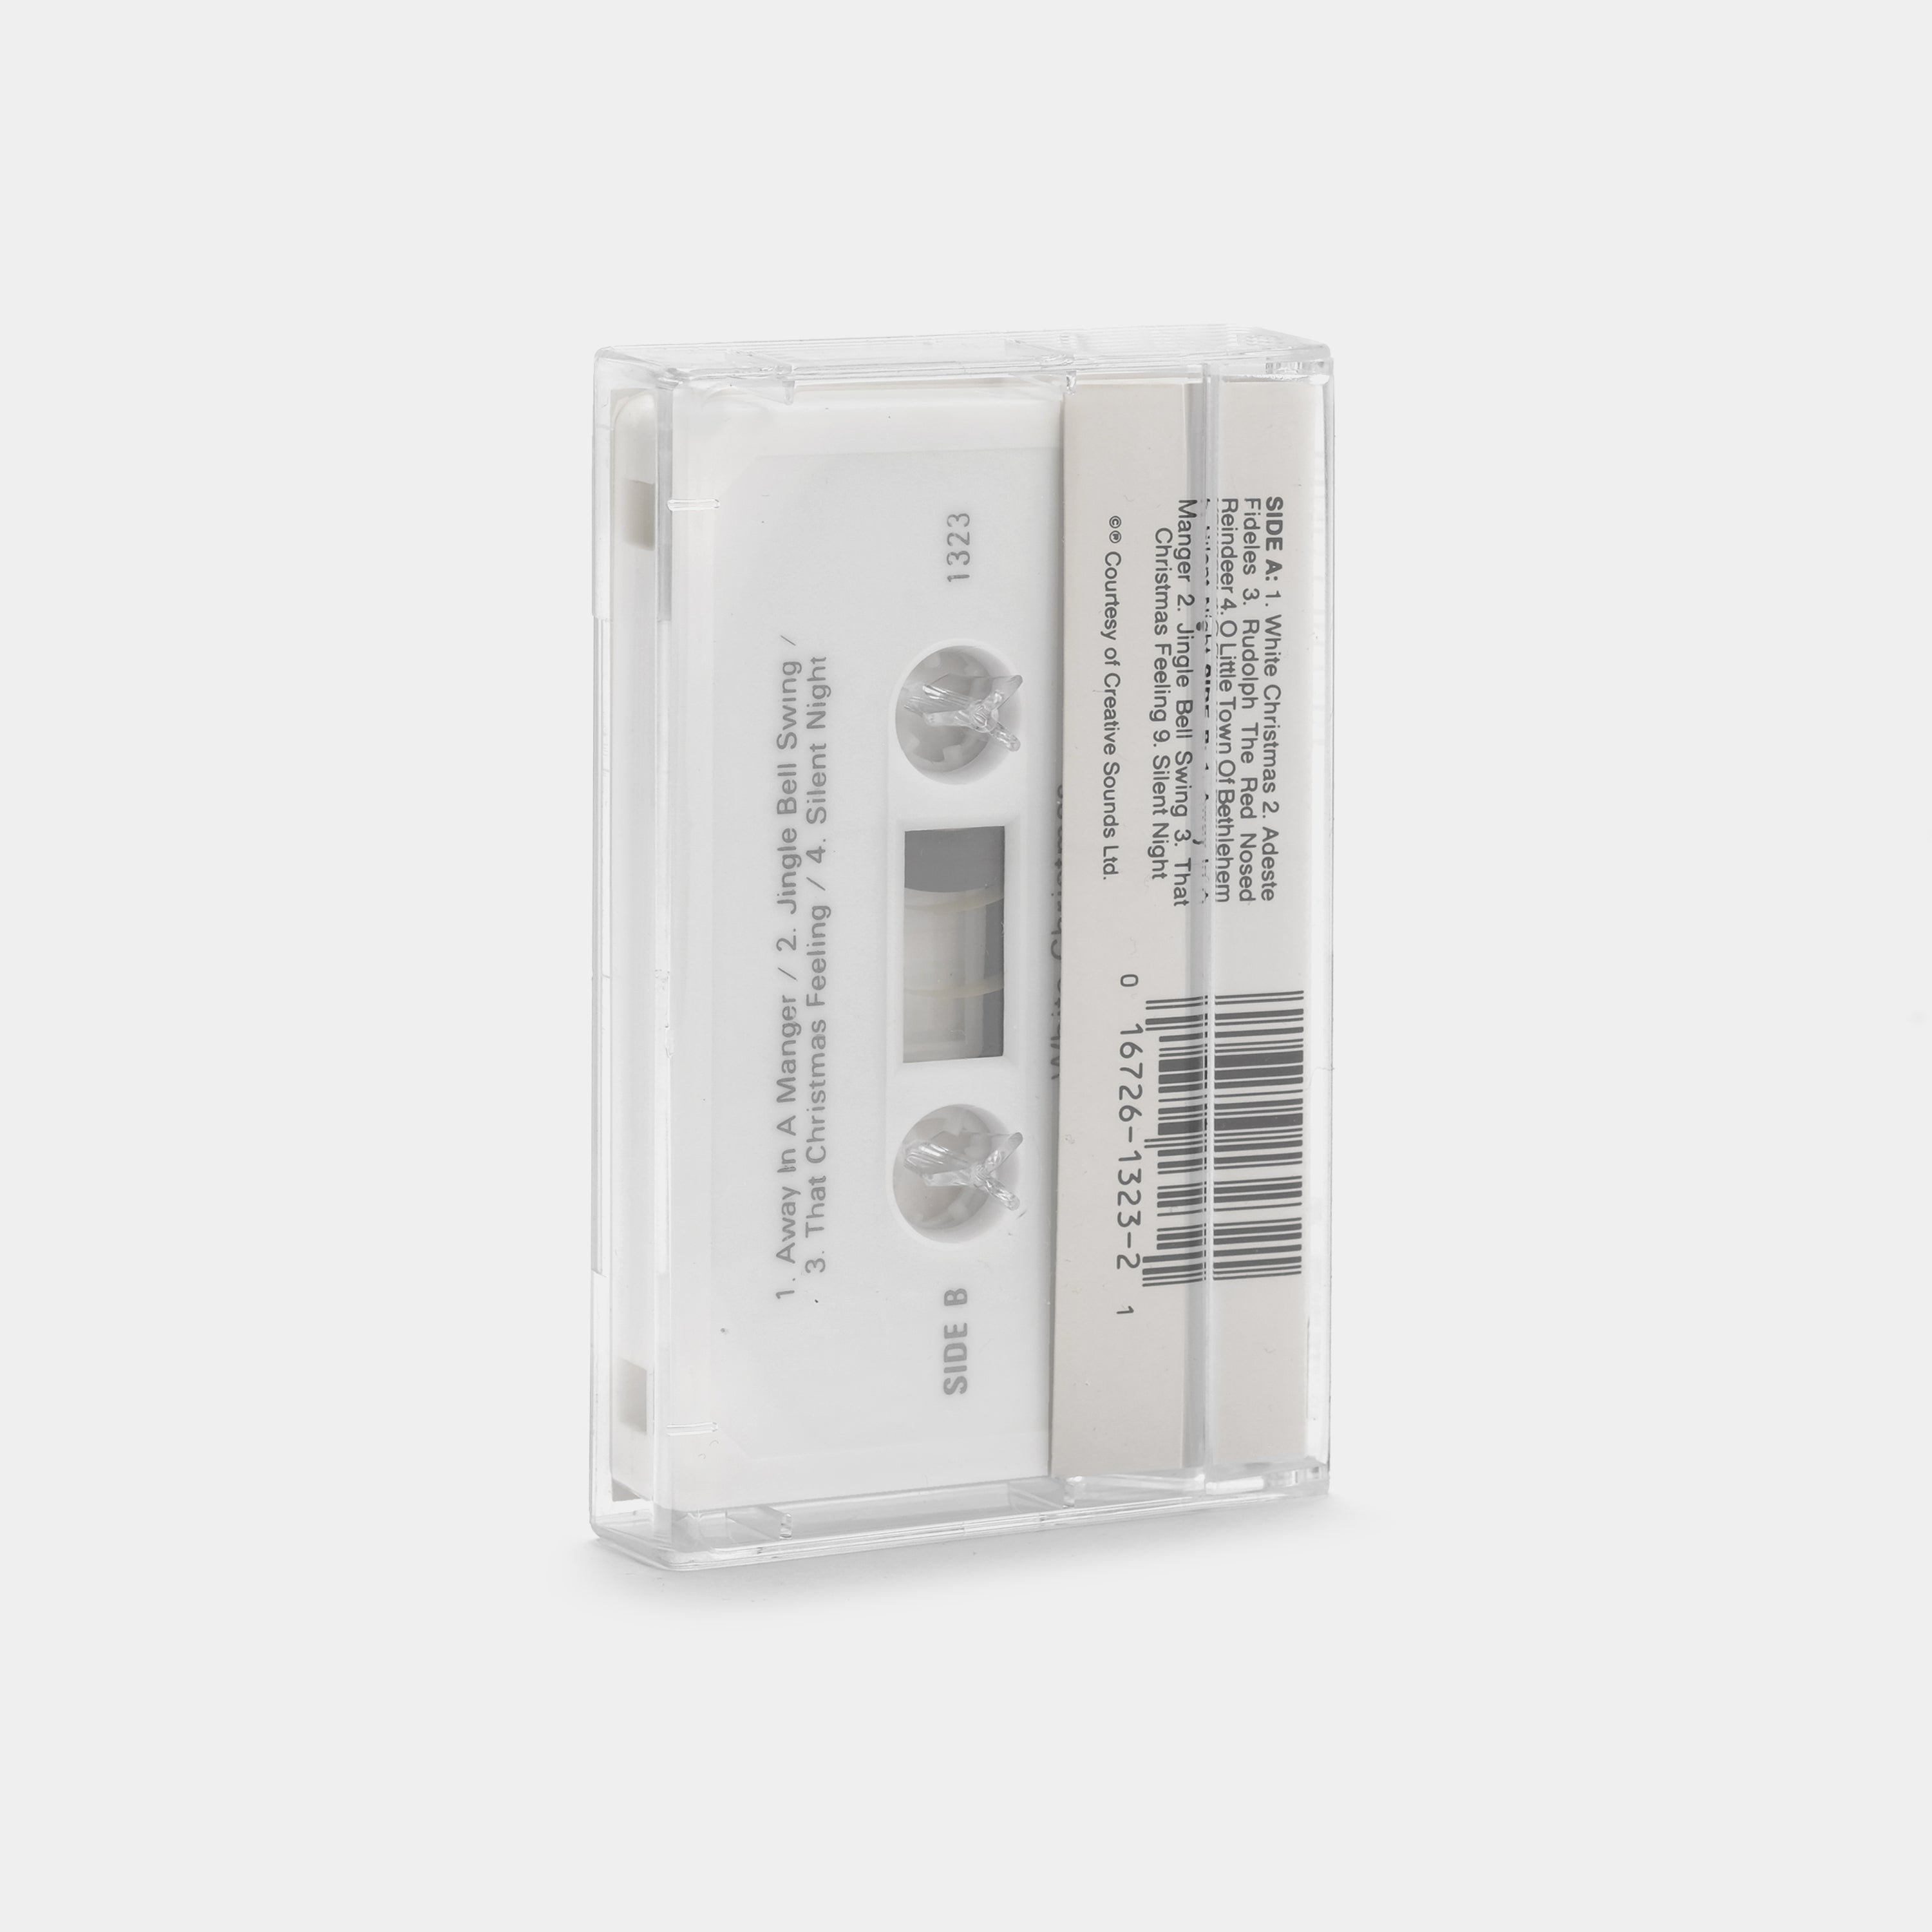 Bing Crosby - White Christmas Cassette Tape